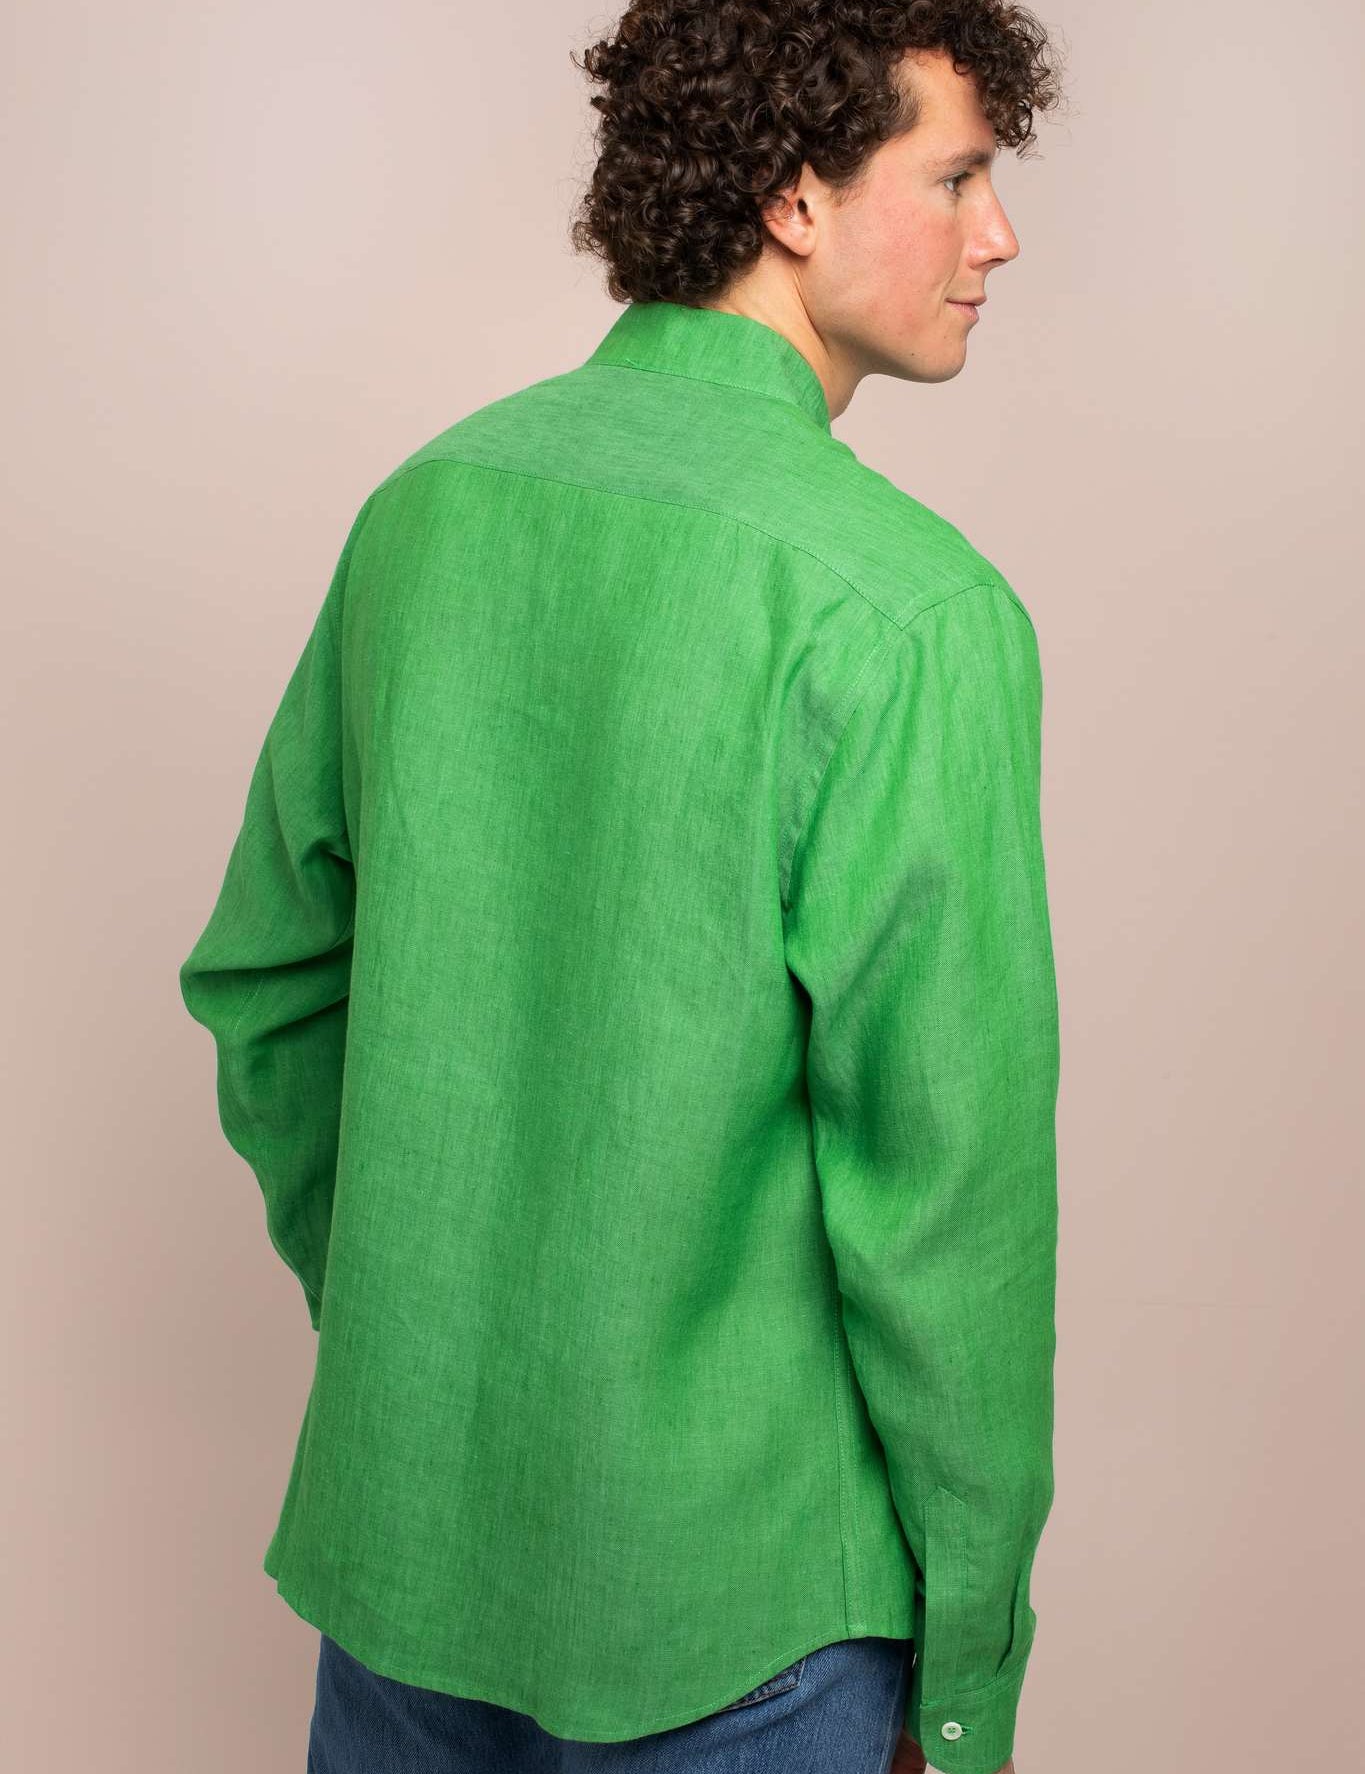 green-linen-shirt-back-view_fed0d6c1-2ebb-4469-97a2-142b4806dfef.jpg